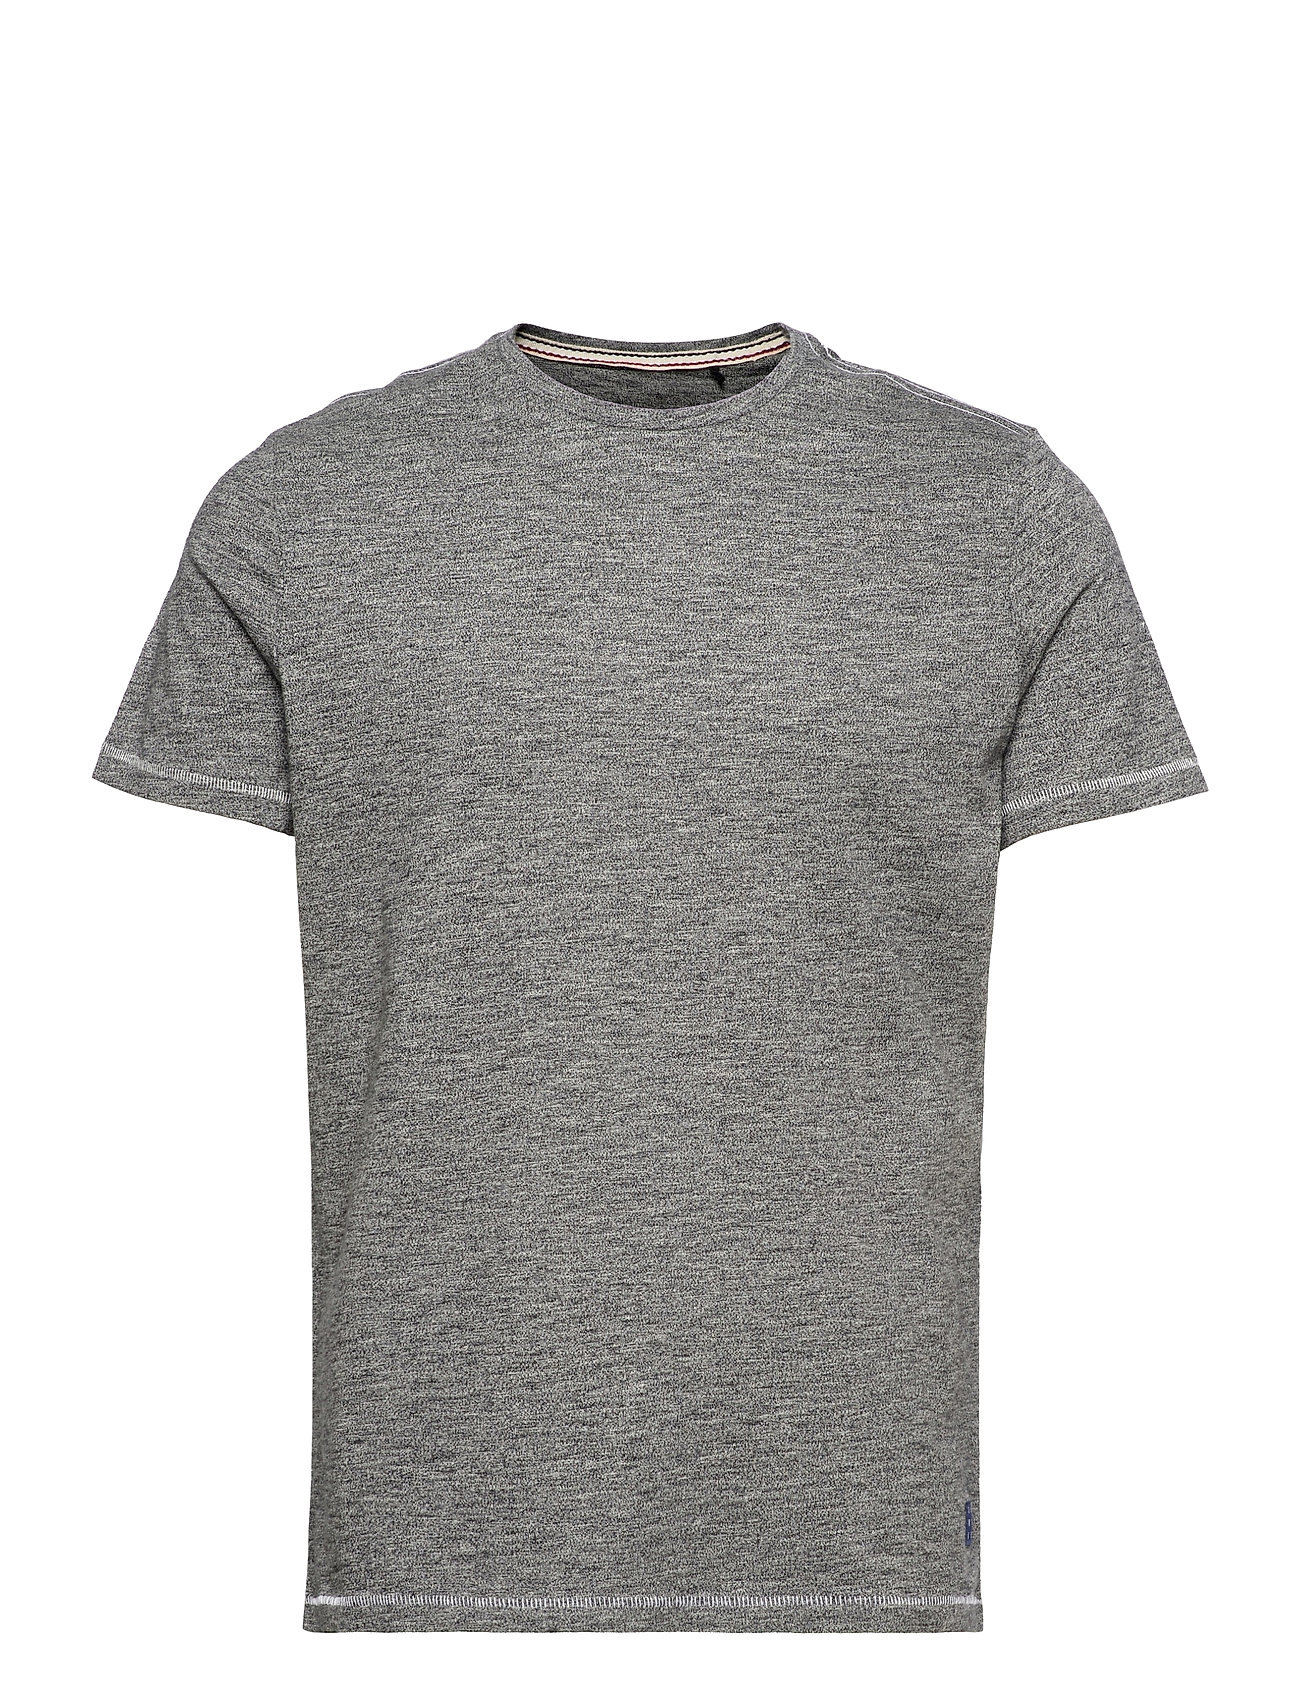 Tee T-shirts Short-sleeved Harmaa Blend